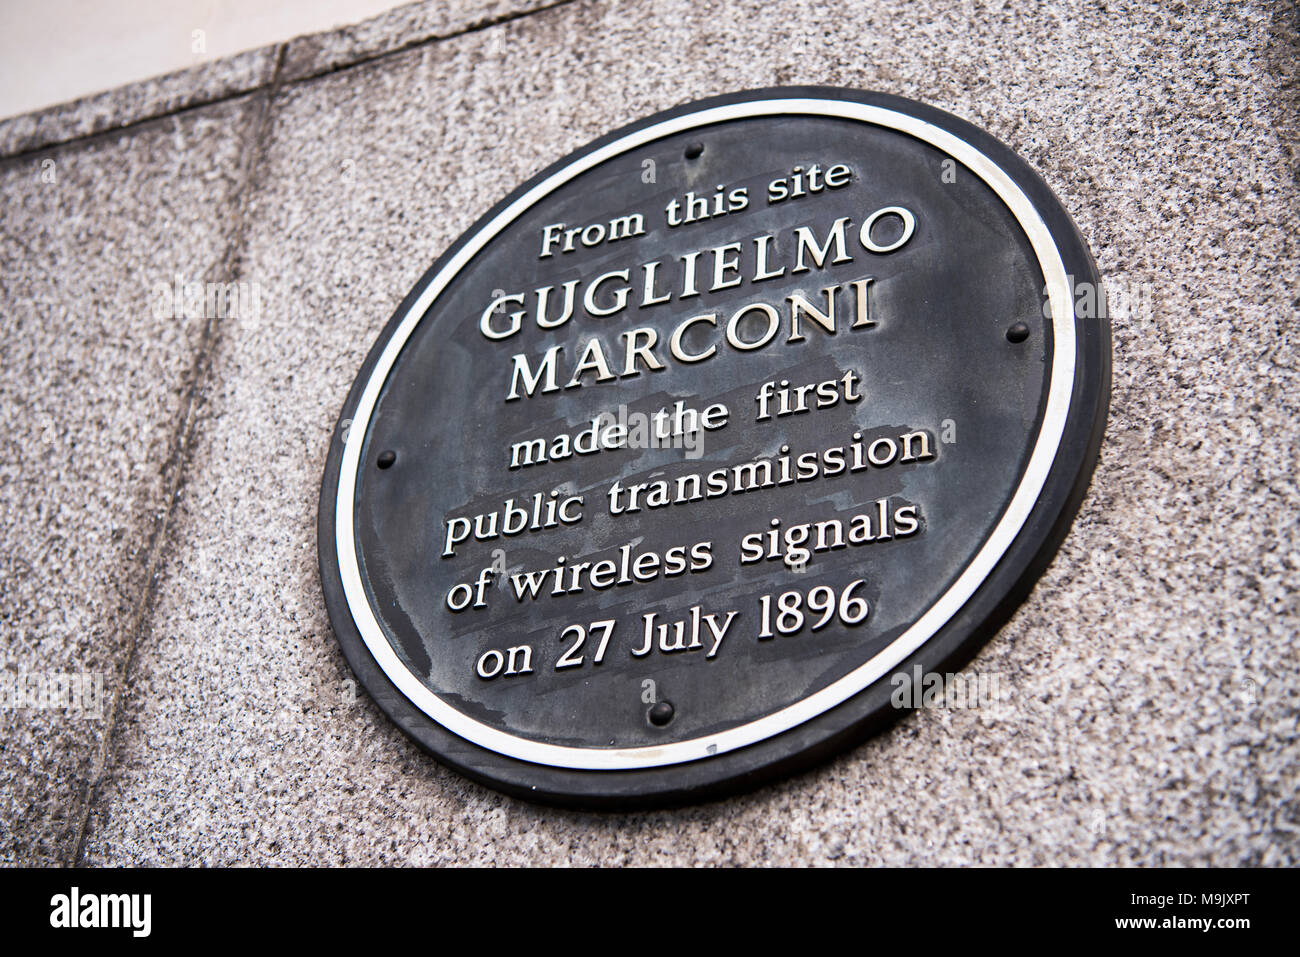 Plaque commémorant la première transmission radio publique par Guglielmo Marconi à l'actuel Centre de BT, Londres, Angleterre, Royaume-Uni Banque D'Images